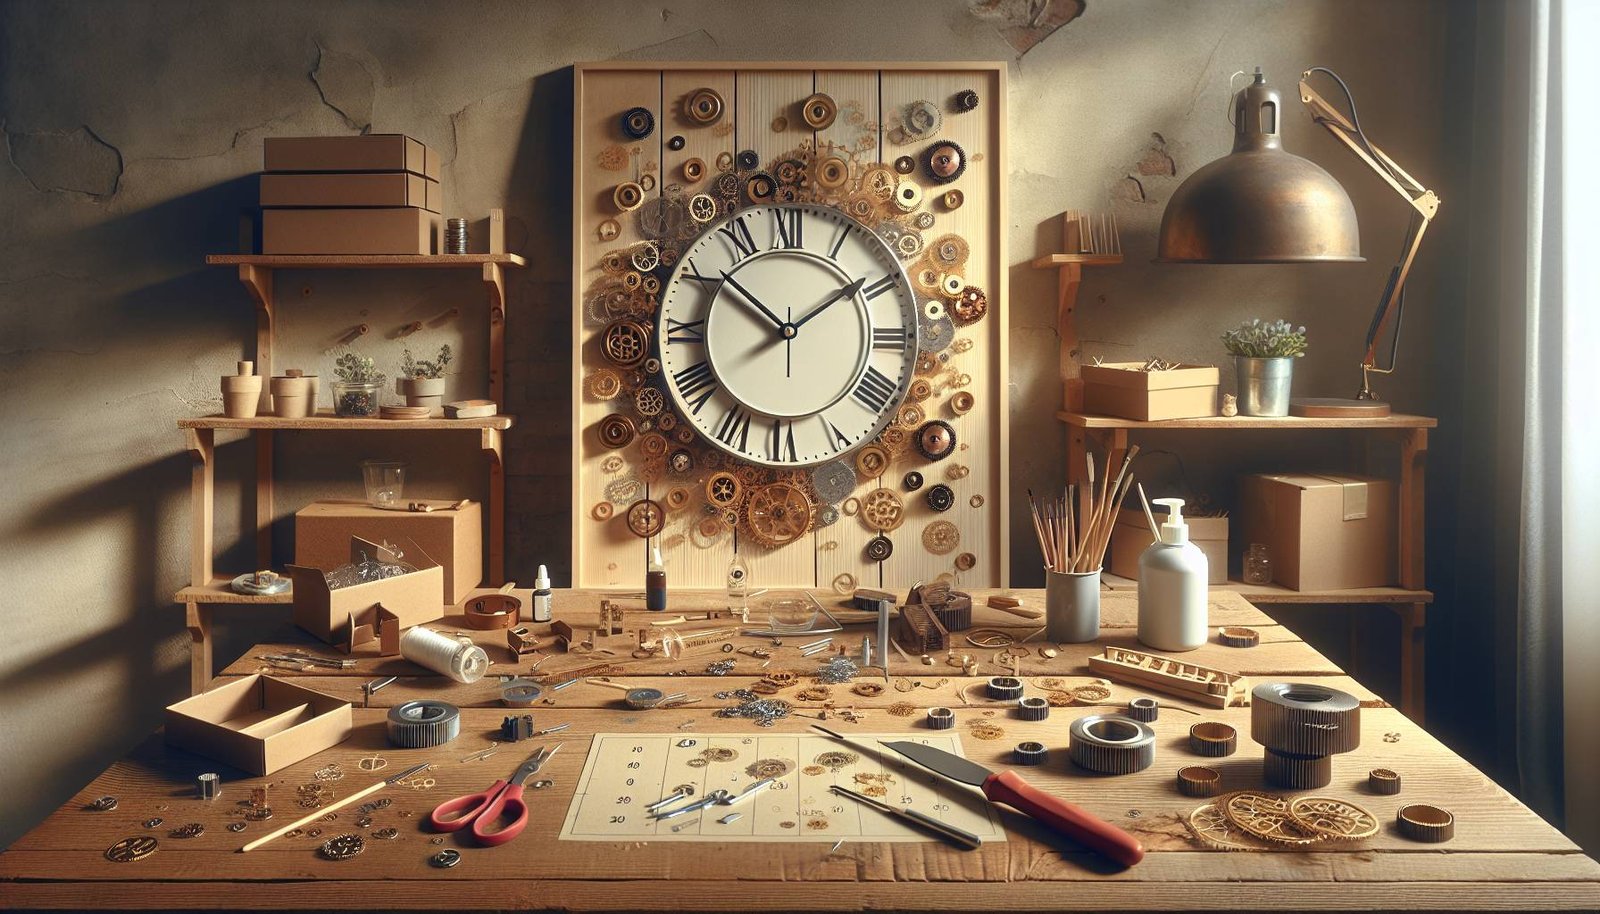 Can I DIY a wall clock kit at home?